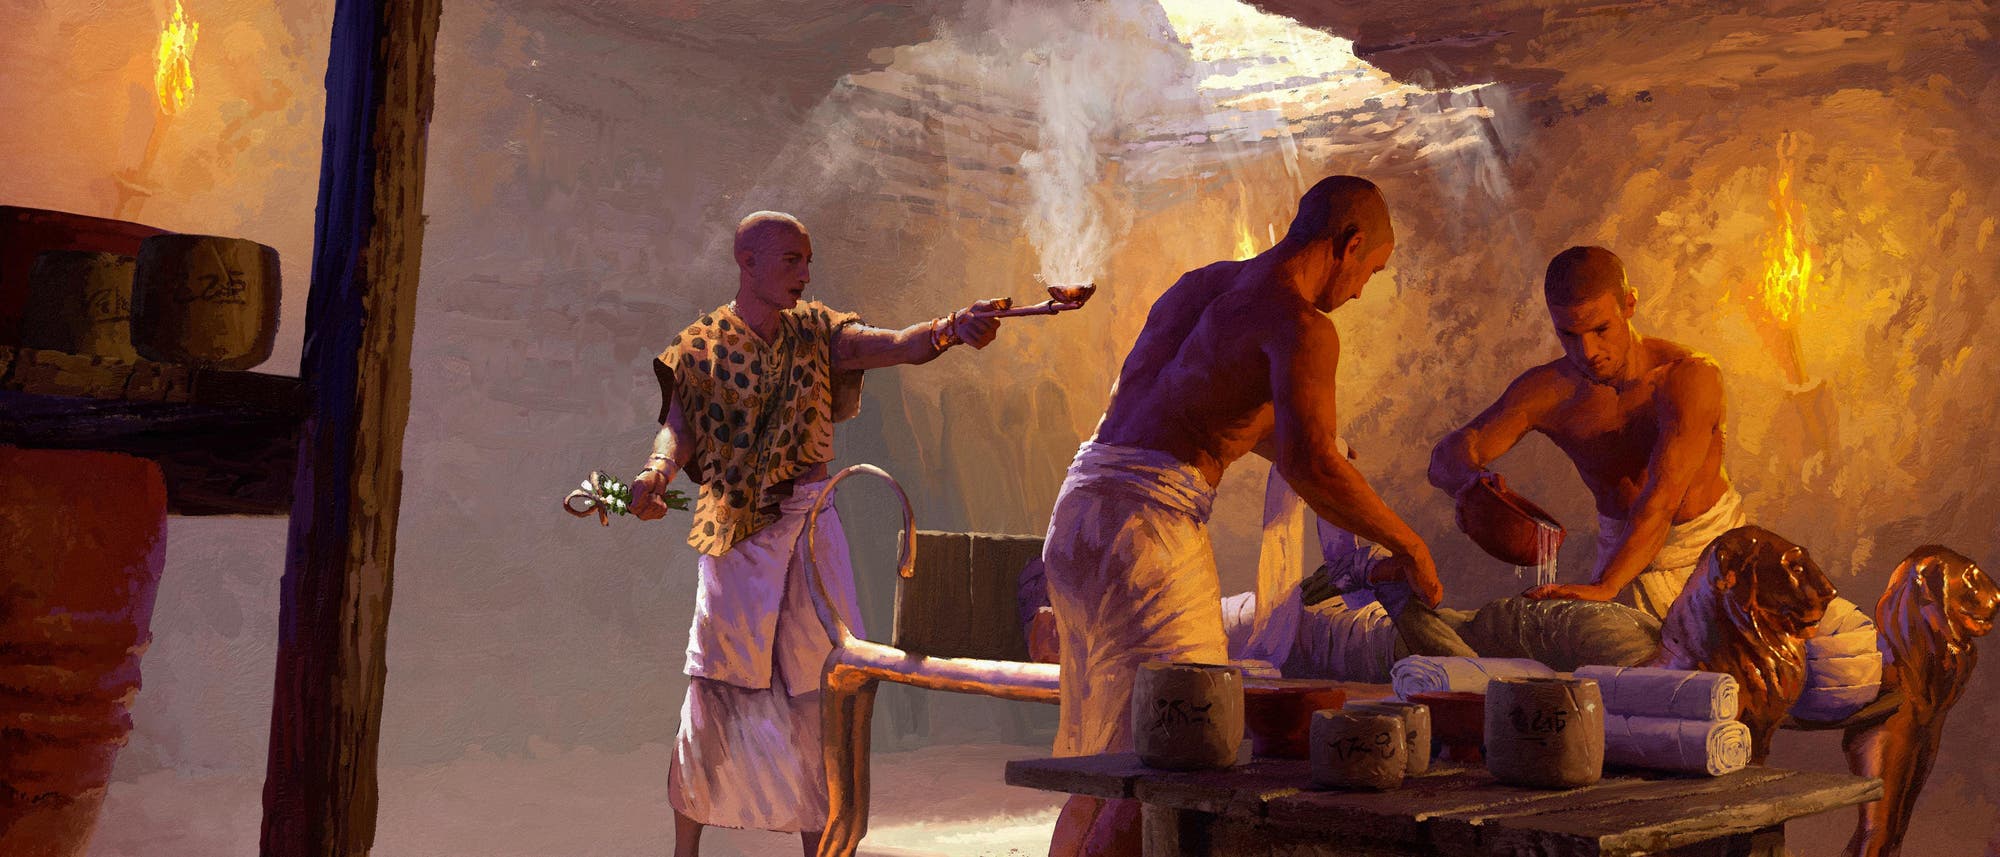 Zwei Balsamierer mumifizieren einen Toten, ein Priester begleitet den Prozess mit Ritualen (Illustration).